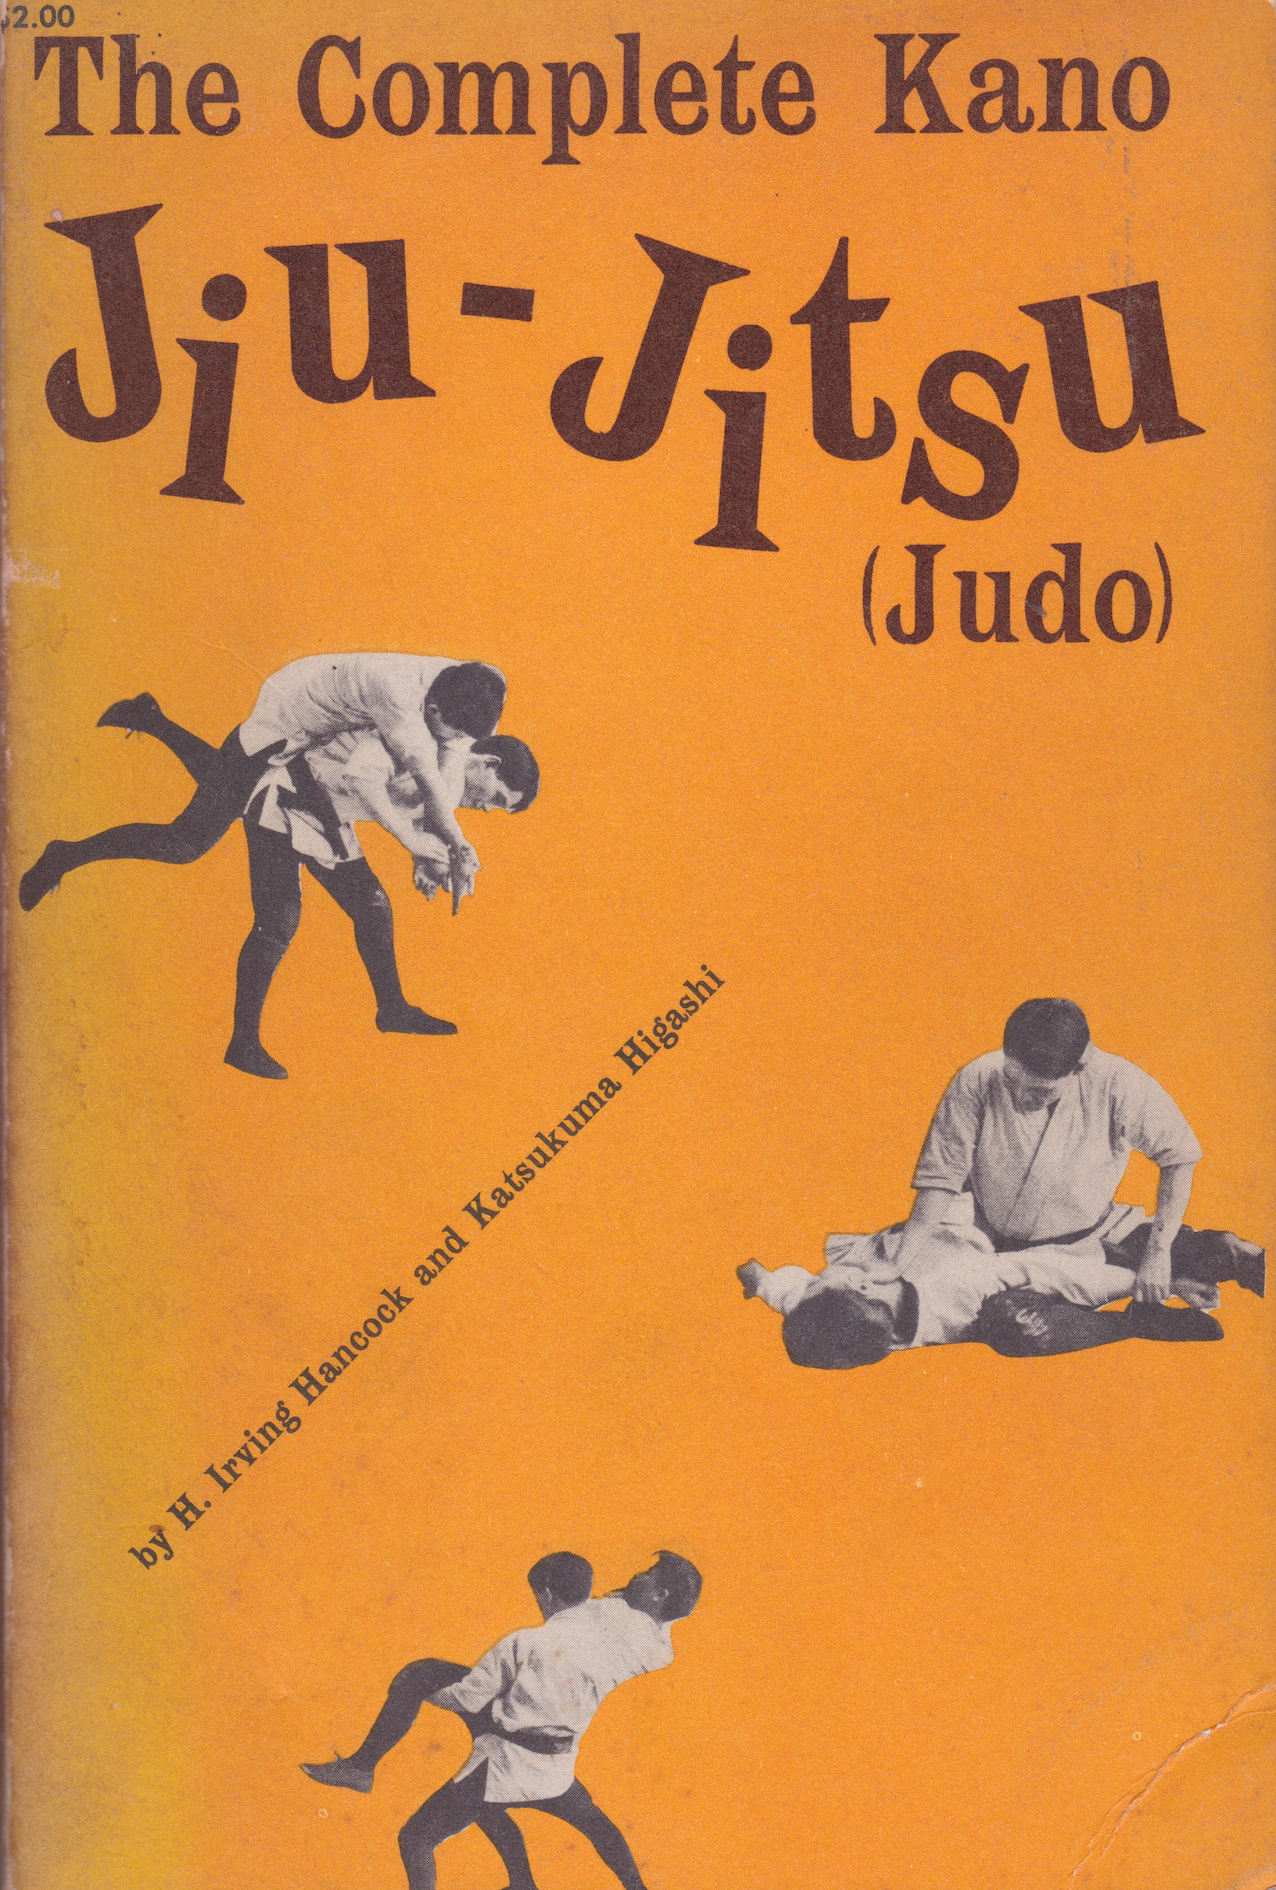 The Complete Kano Jiu-Jitsu (Judo) Book by H Irving Hancock & Katsukuma Higashi (Preowned)